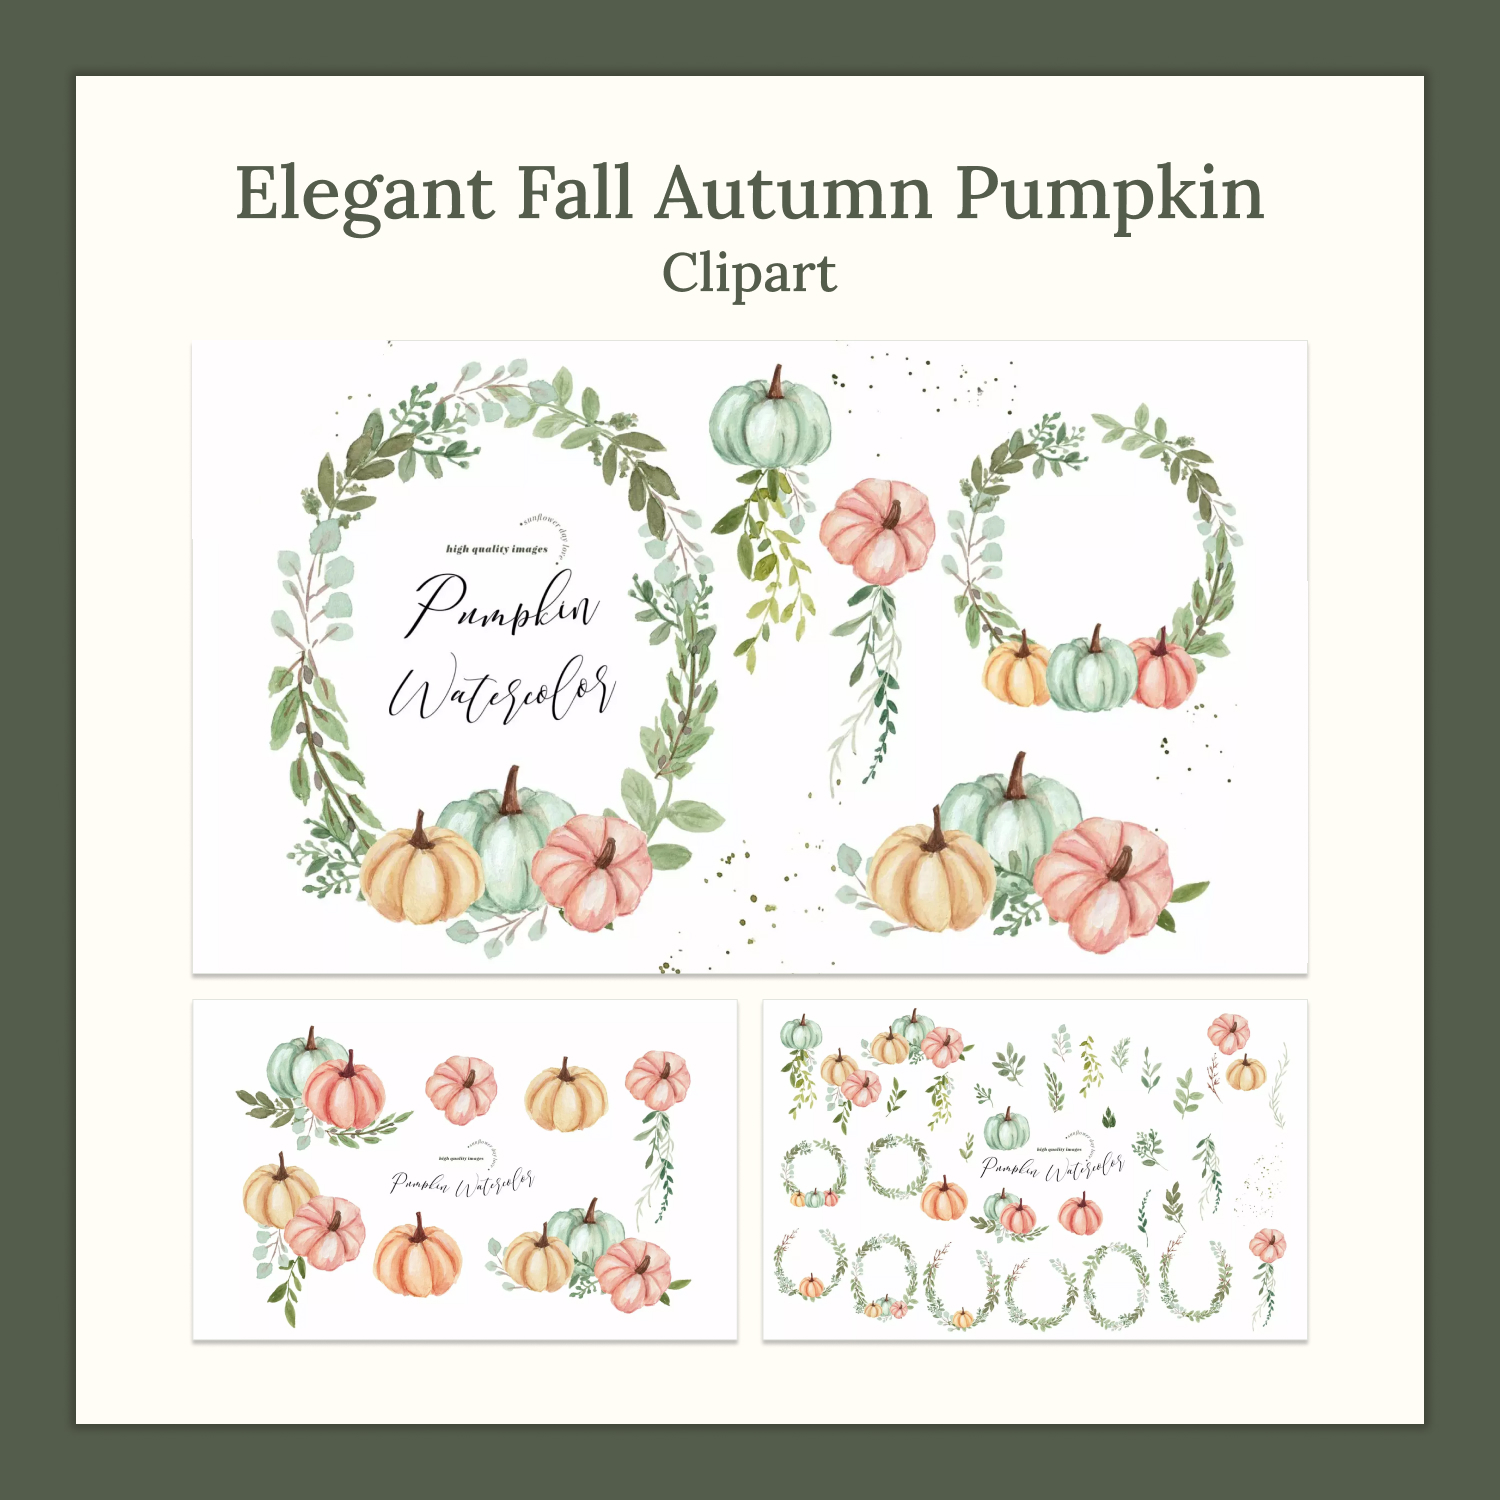 Prints of elegant fall autumn pumpkin clipart.